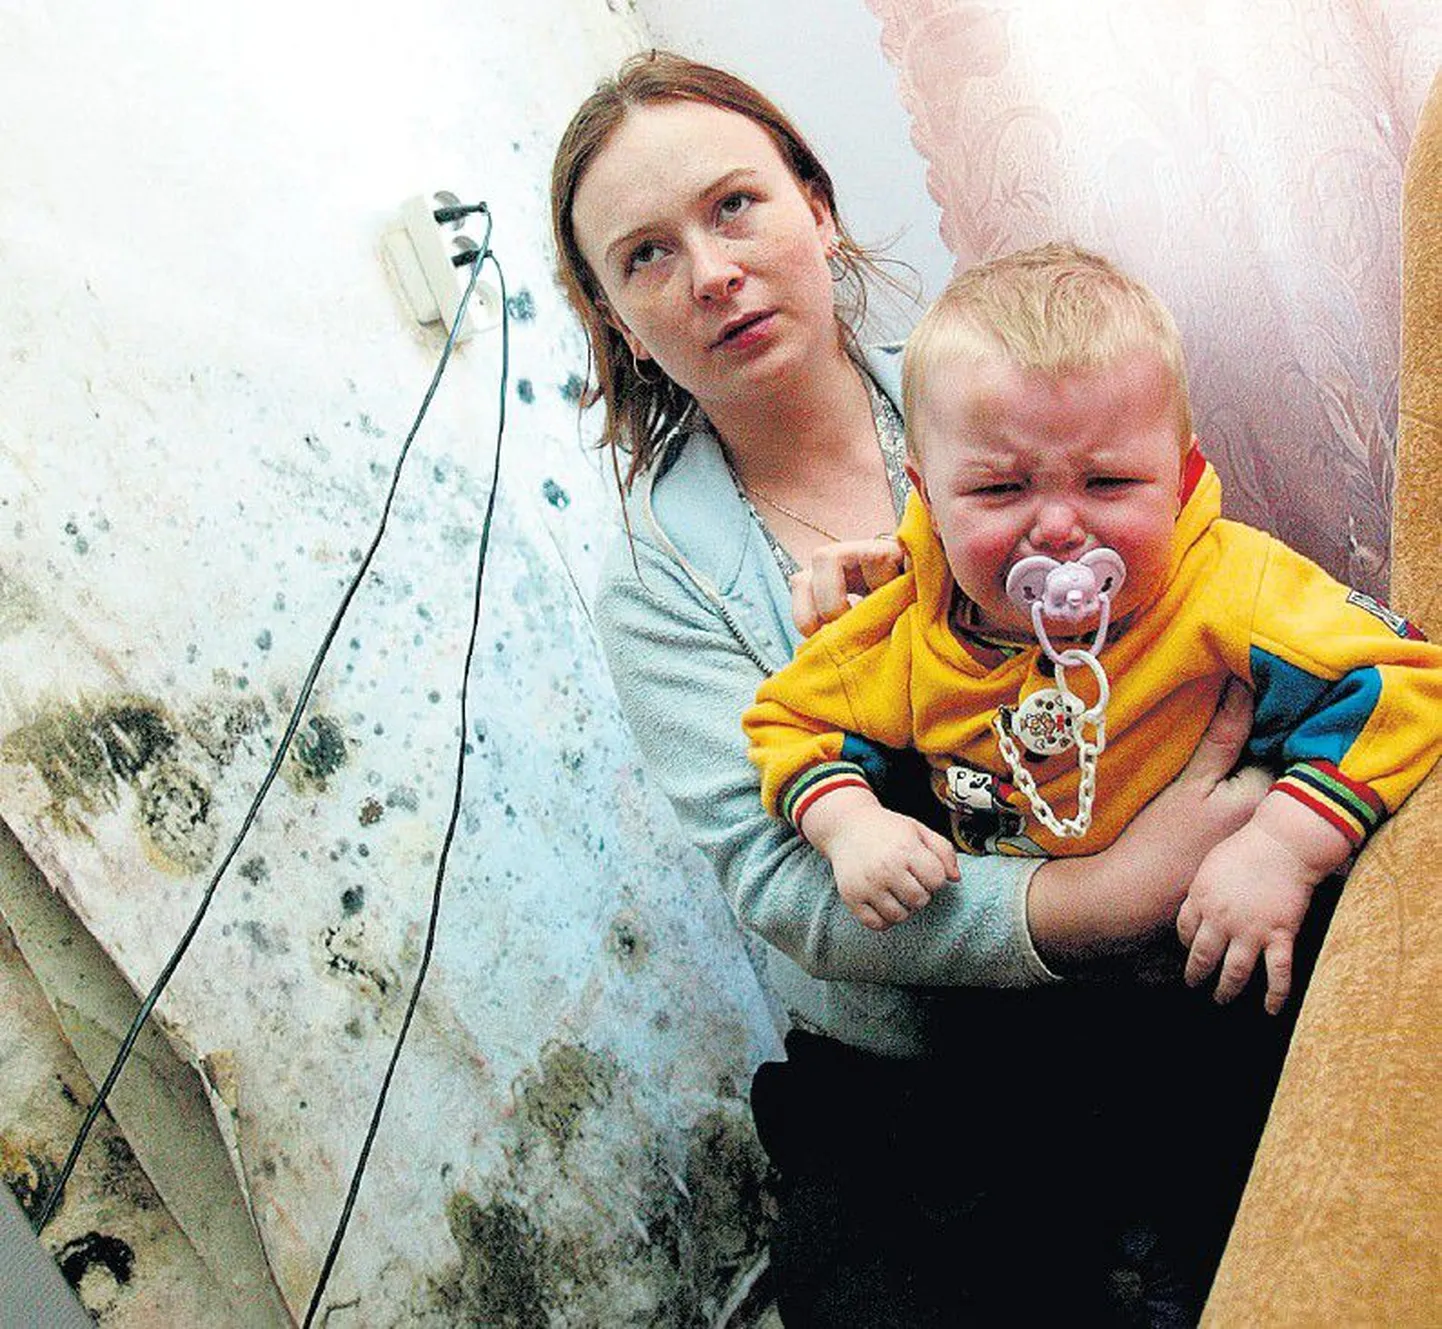 Rahu tänava sotsiaalkorteris elav Aleksandra Sprenk ei kavatse leppida niiske eluruumiga, kus tema lapsed on rohkem haiged kui terved.